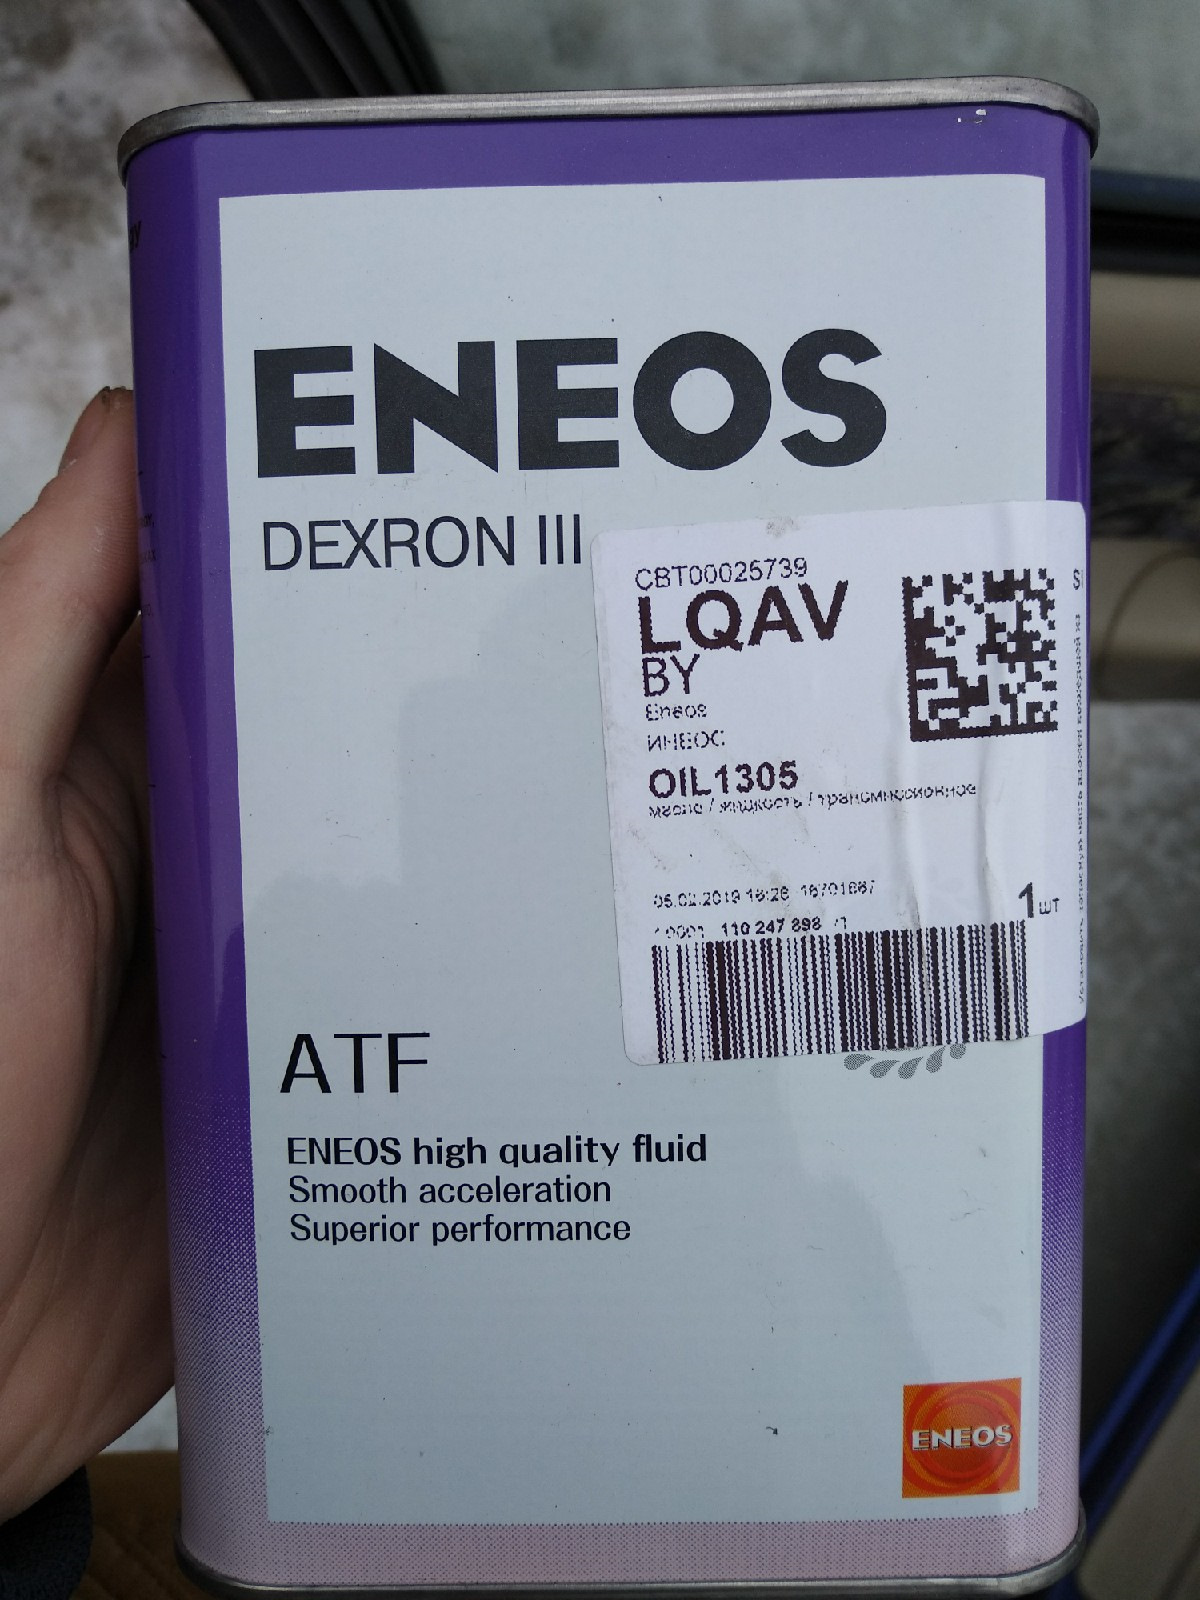 Eneos atf dexron. ENEOS ATF 3. ENEOS oil1305. Oil1305. ATF Dexron 3.